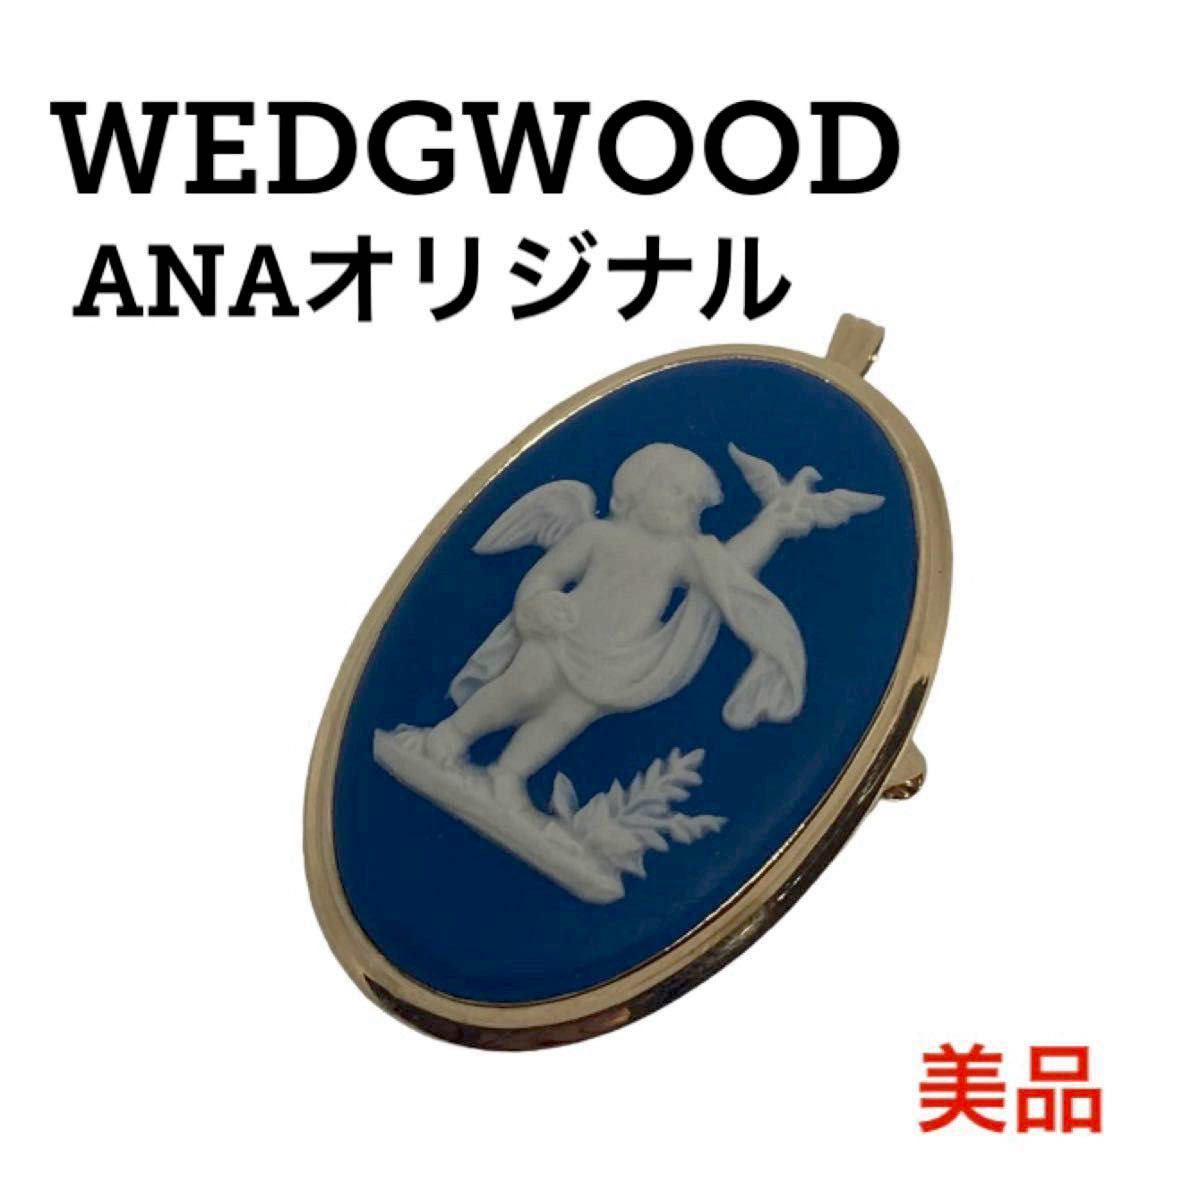 WEDGWOOD ANA オリジナル ジャスパー ブローチ 金 ウエッジウッド ペンダントトップ ネックレス カメオ ジャスパー